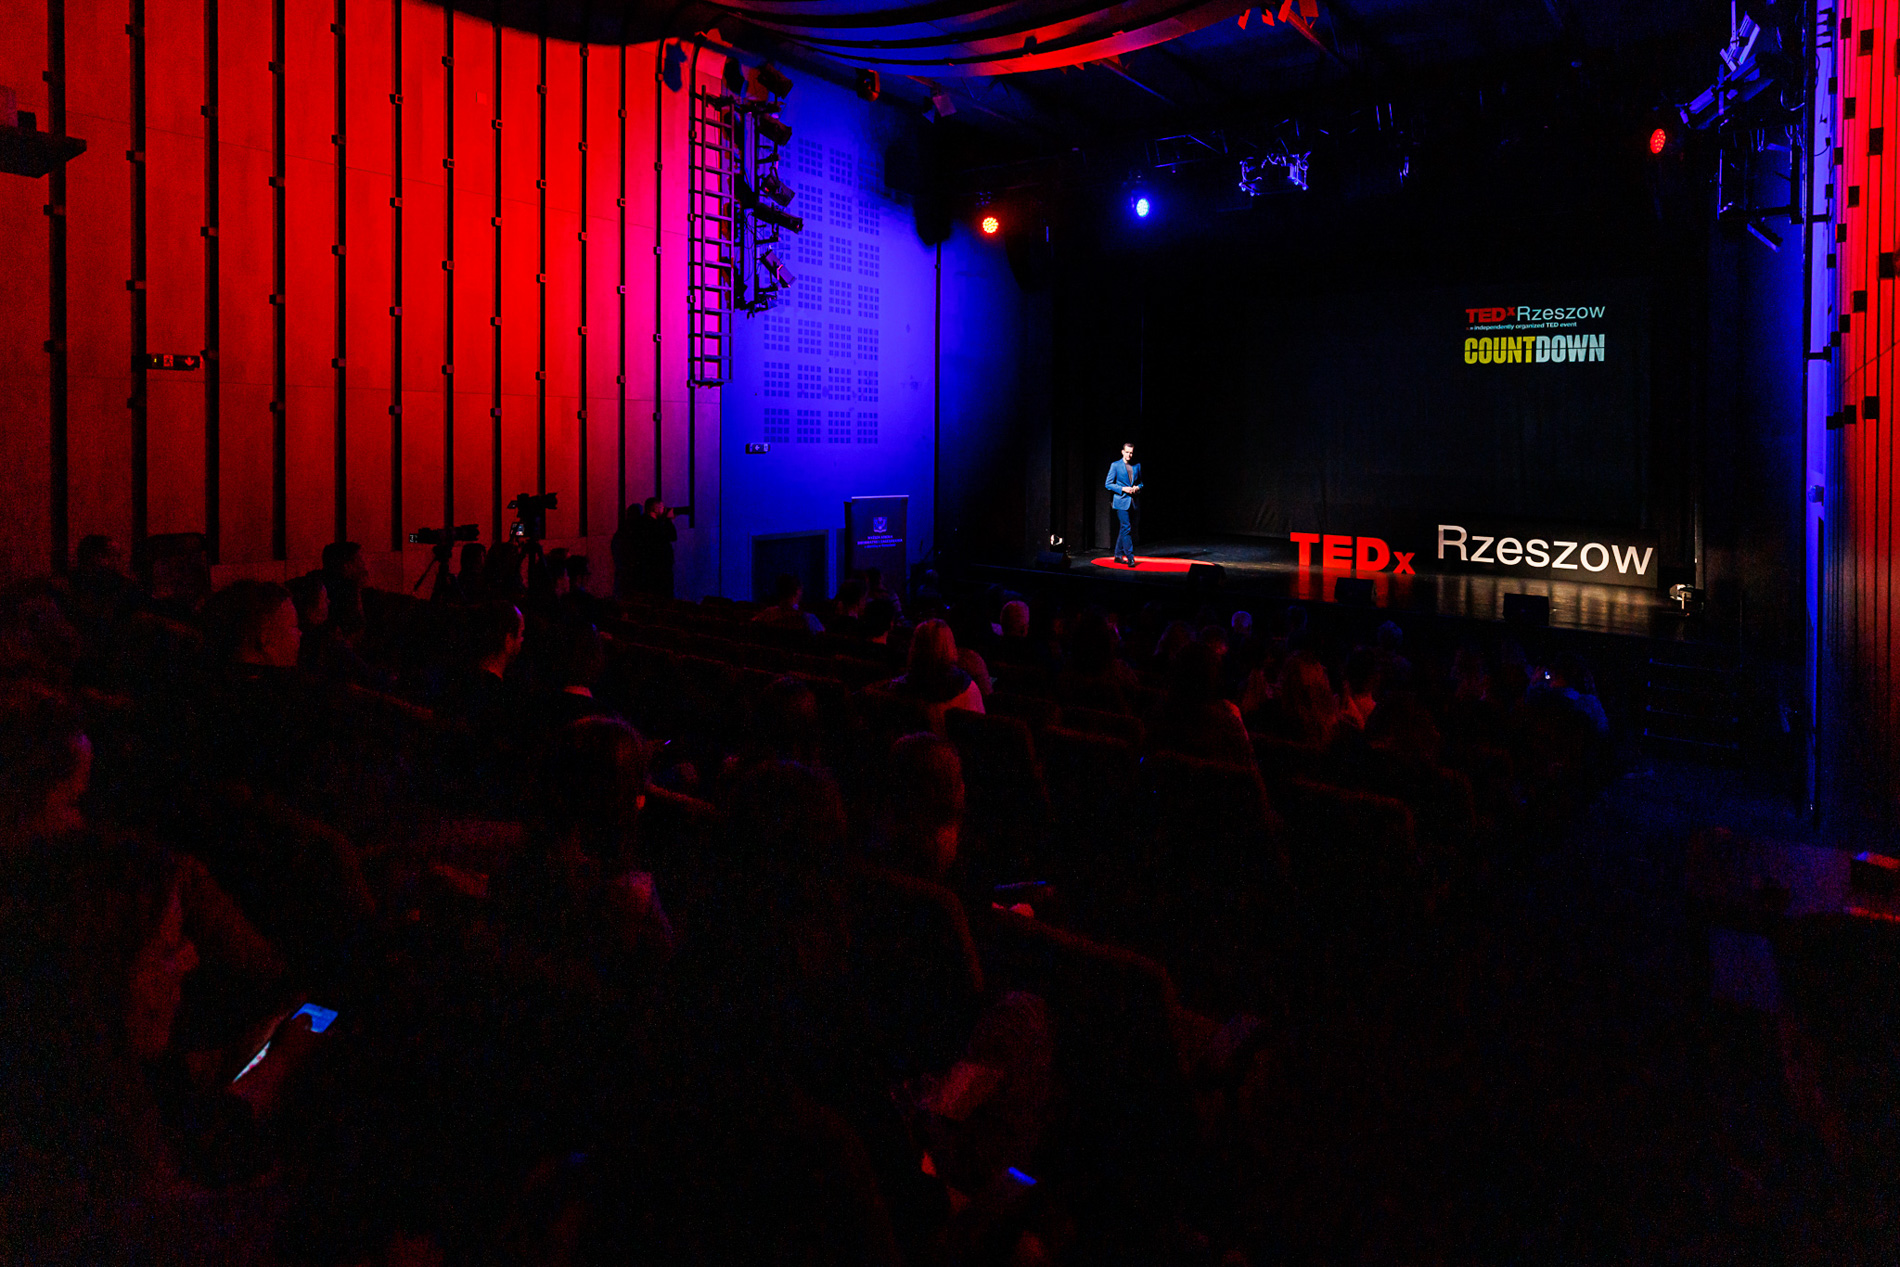 Wystąpienie Prelegenta dr Macieja Rysia na scenie podczas wydarzenia TEDx Rzeszów Countdown WSIiZ